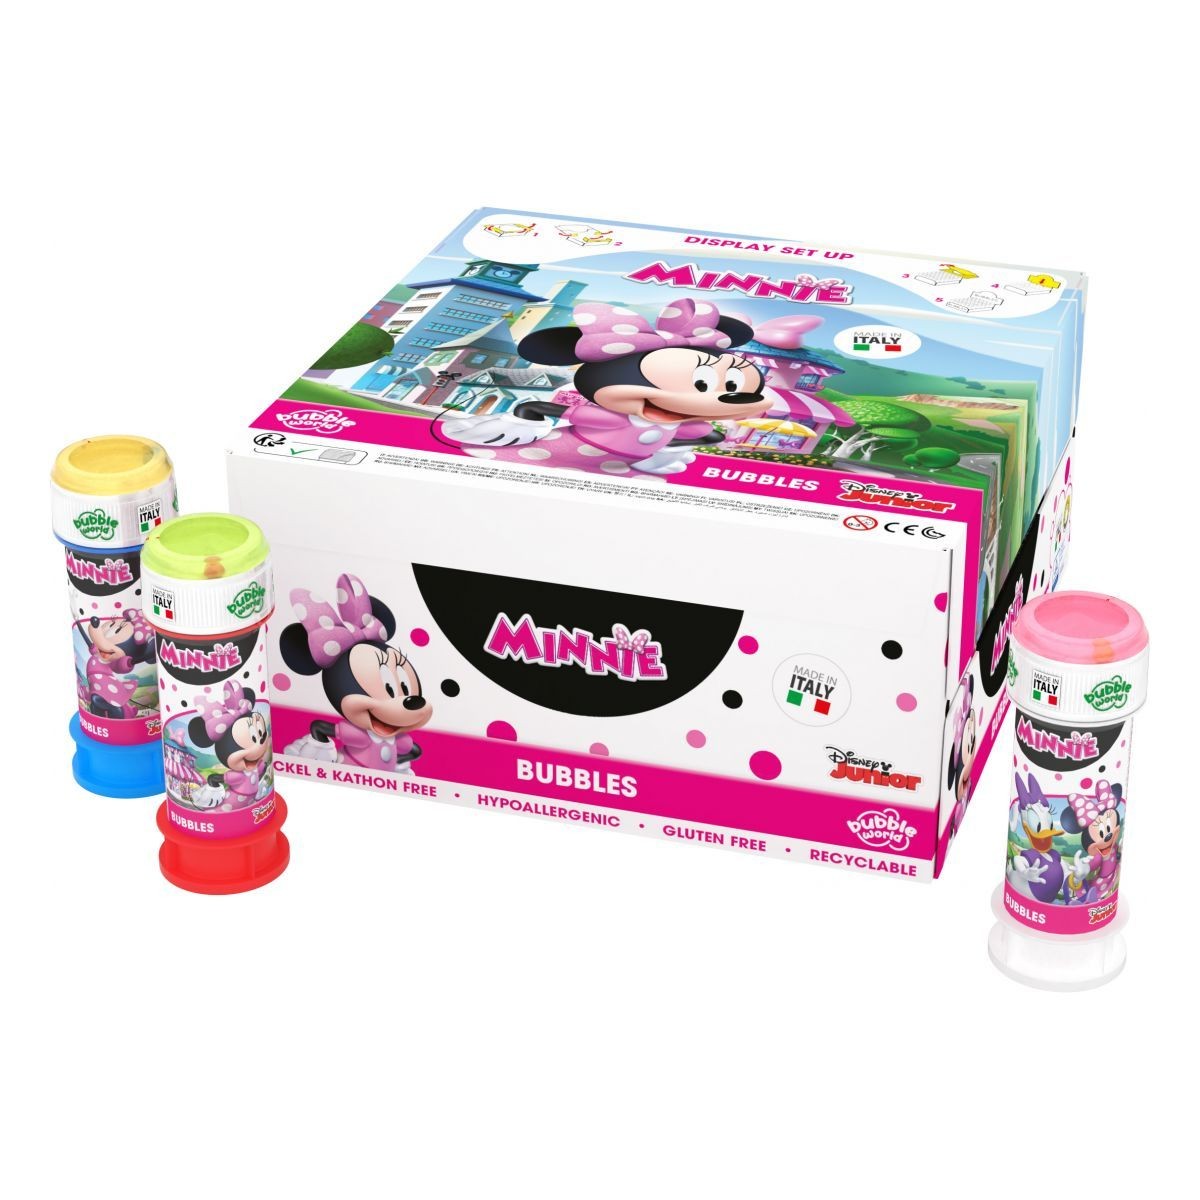 Minnie bubbles confezione 36 pezzi